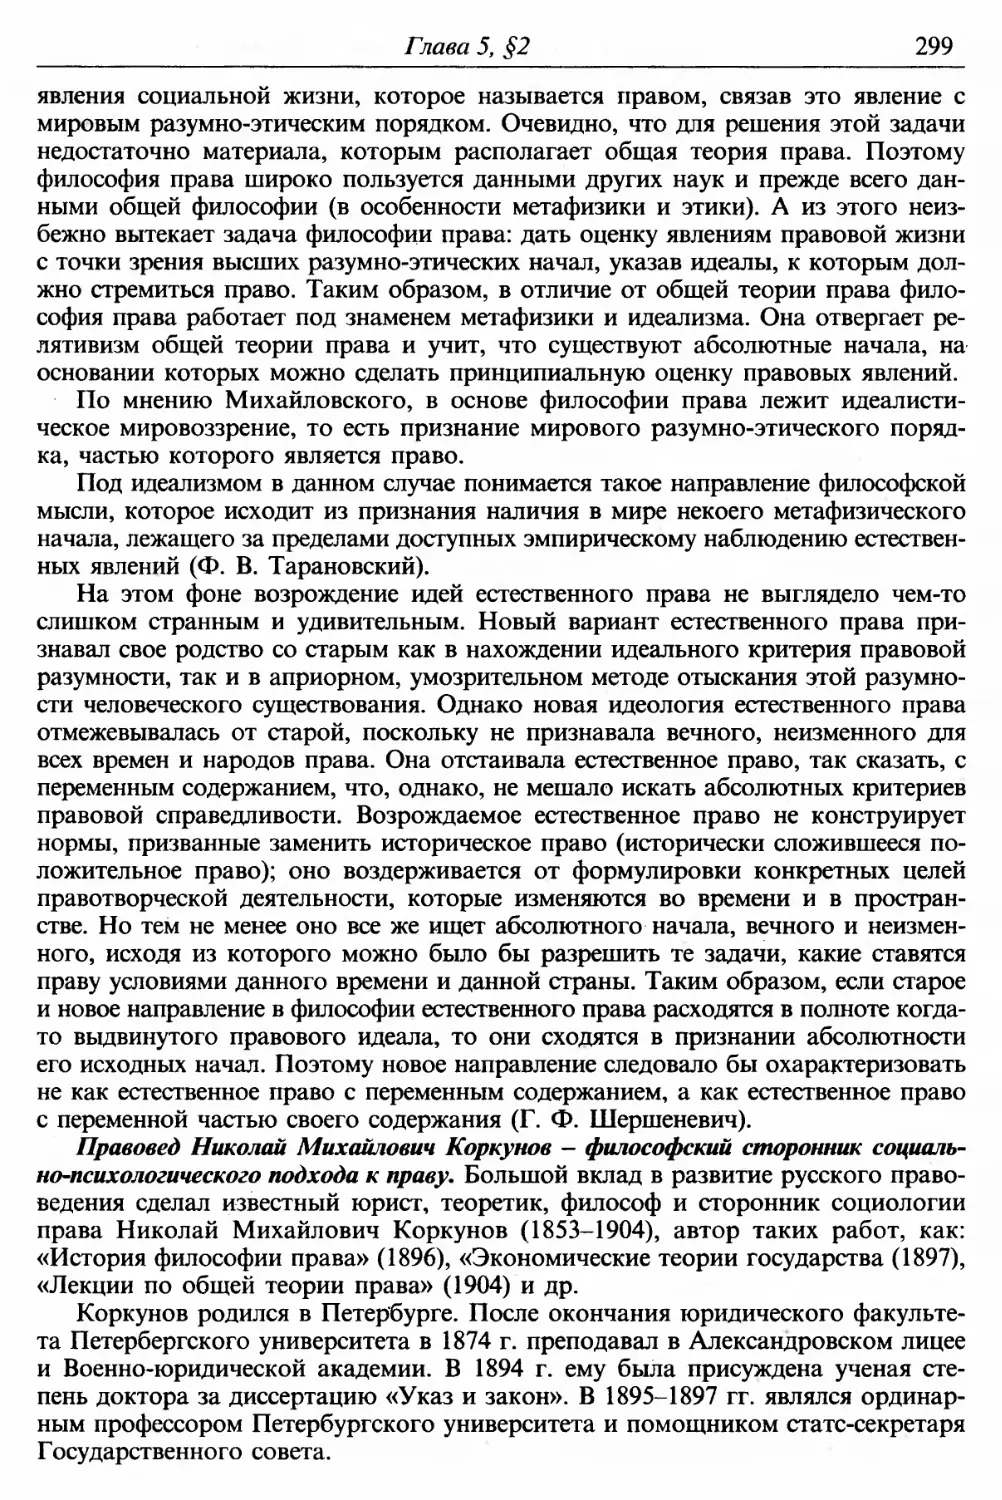 Правовед Николай Михайлович Коркунов — философский сторонник социально-психологического подхода к праву